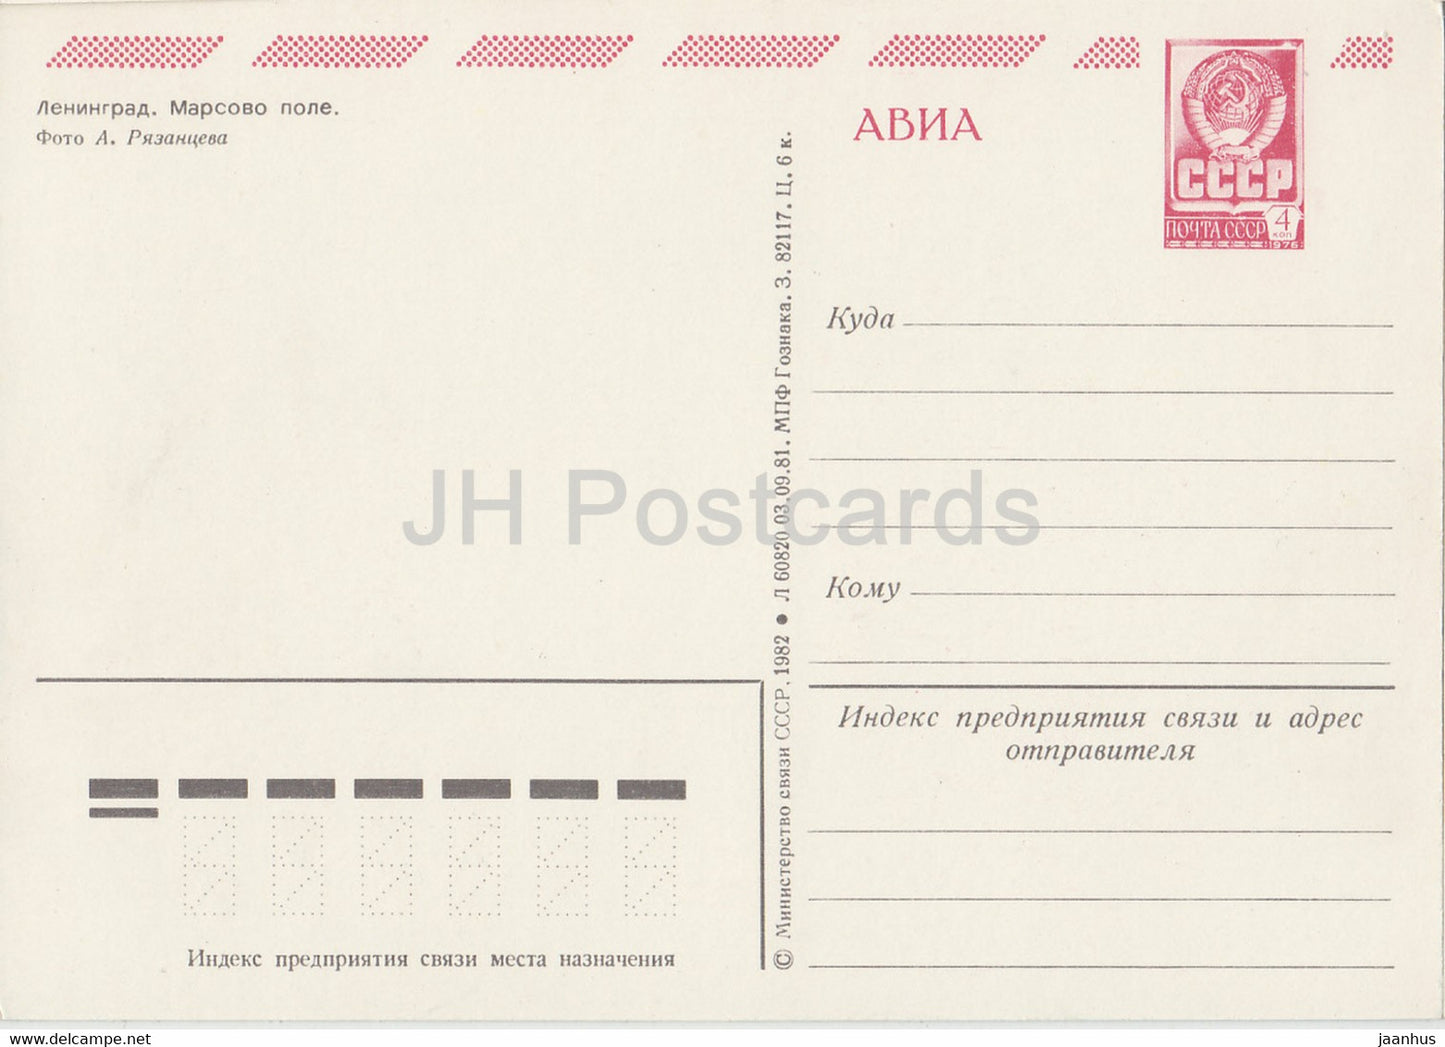 Leningrad - St Petersburg - The Field of Mars - AVIA - postal stationery - 1982 - Russia USSR - unused